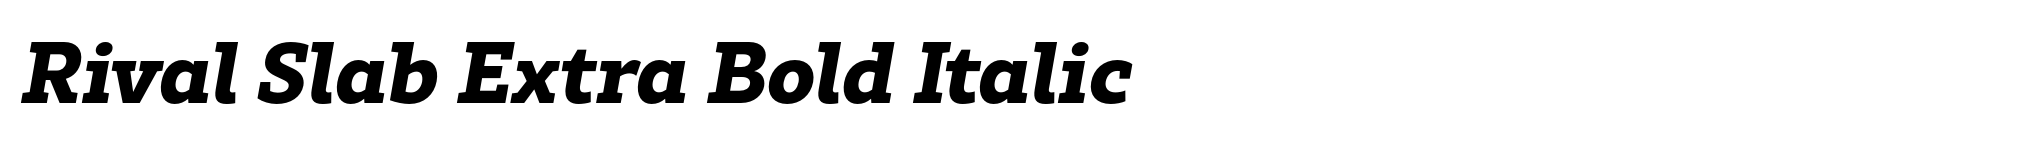 Rival Slab Extra Bold Italic image